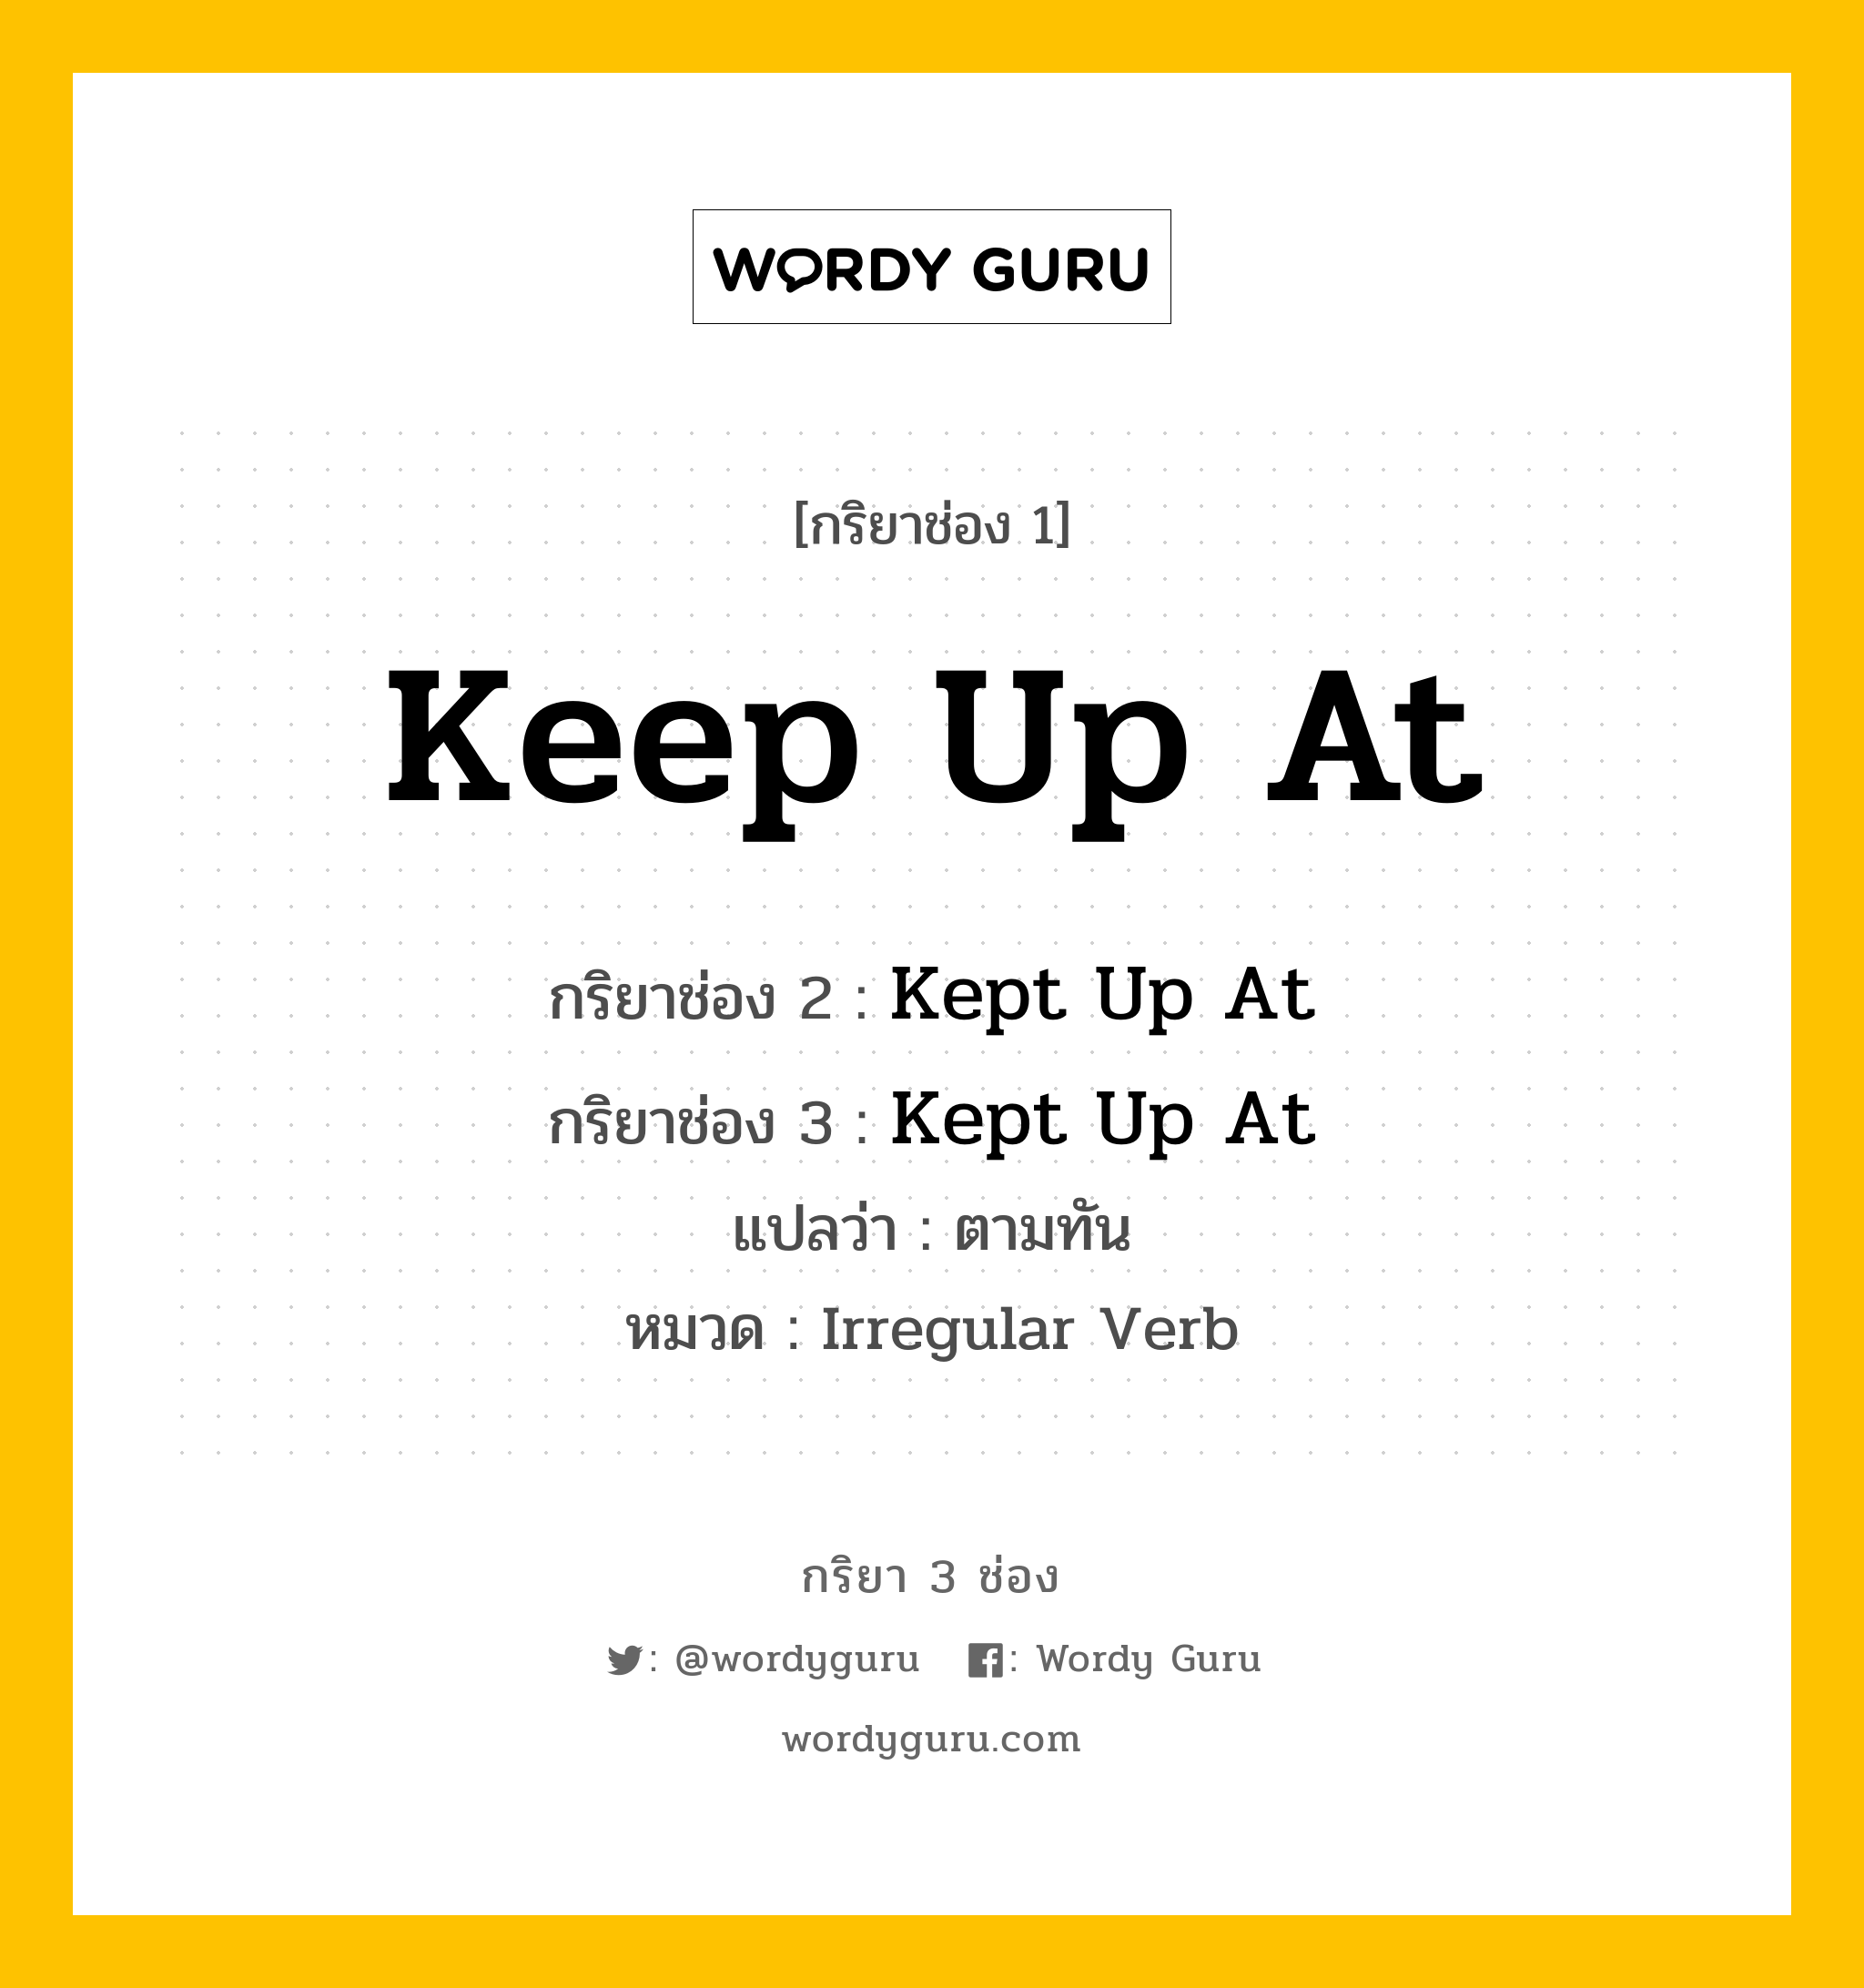 กริยา 3 ช่อง: Keep Up At ช่อง 2 Keep Up At ช่อง 3 คืออะไร, กริยาช่อง 1 Keep Up At กริยาช่อง 2 Kept Up At กริยาช่อง 3 Kept Up At แปลว่า ตามทัน หมวด Irregular Verb หมวด Irregular Verb